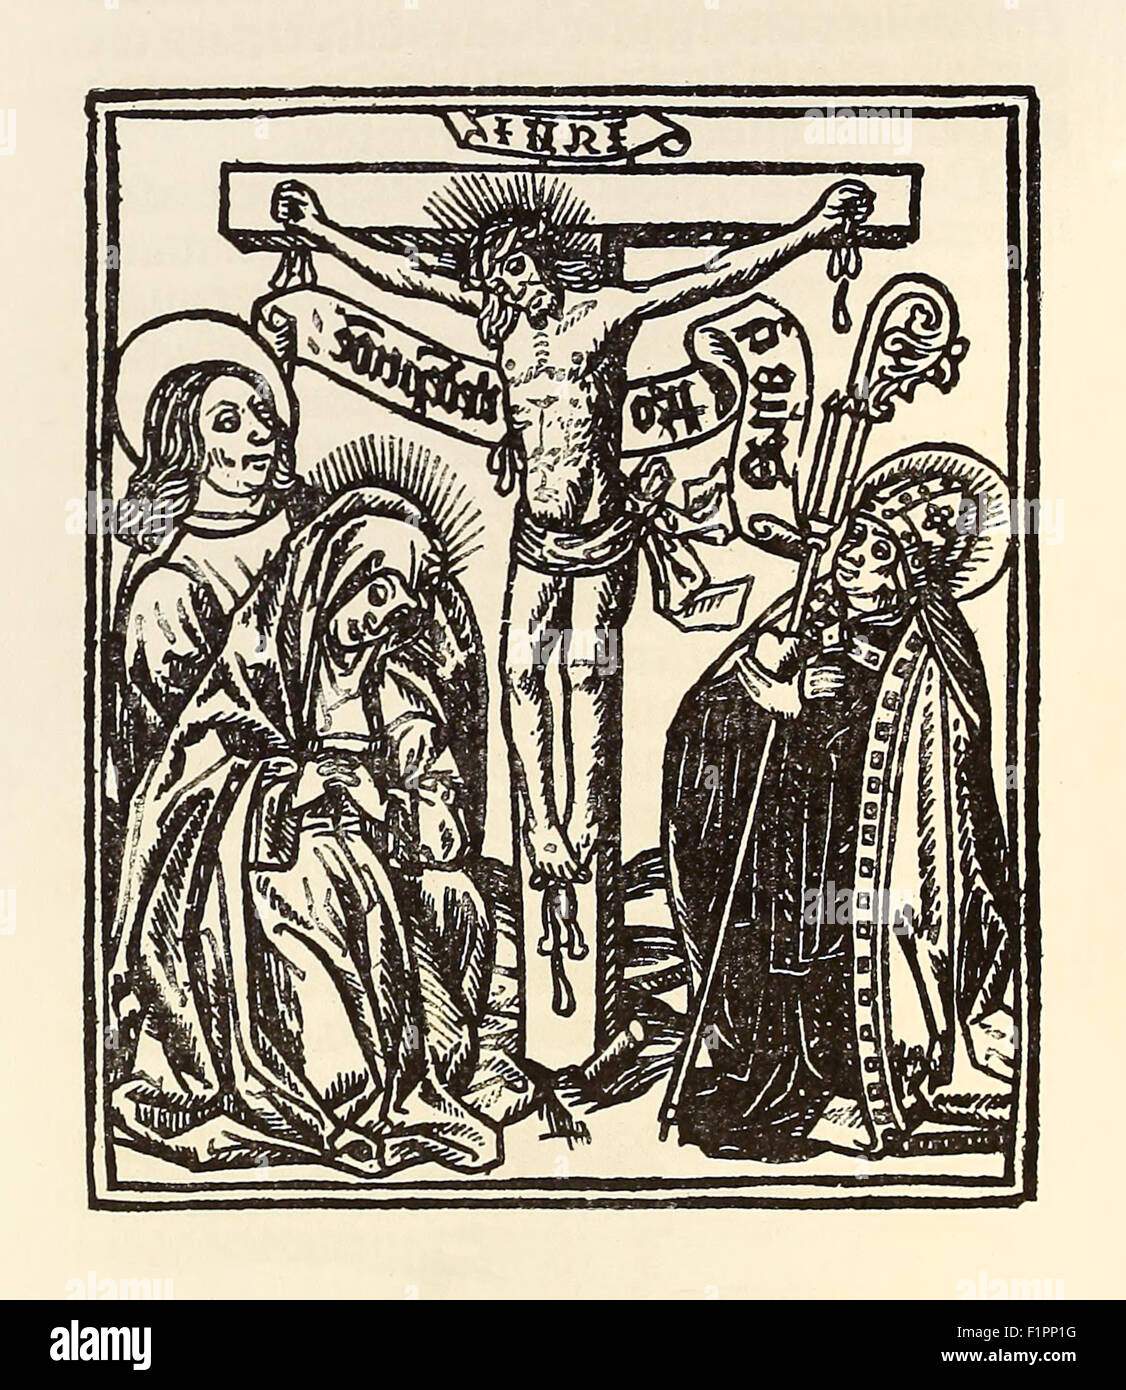 Crucifixion du Christ, gravure sur bois de 1504, dernière page de 'Calcoen' publié à Anvers, en Belgique, en 1504 ; un compte de Vasco da Gama de son deuxième voyage en Inde imprimé en flamand. Voir la description pour plus d'informations. Banque D'Images